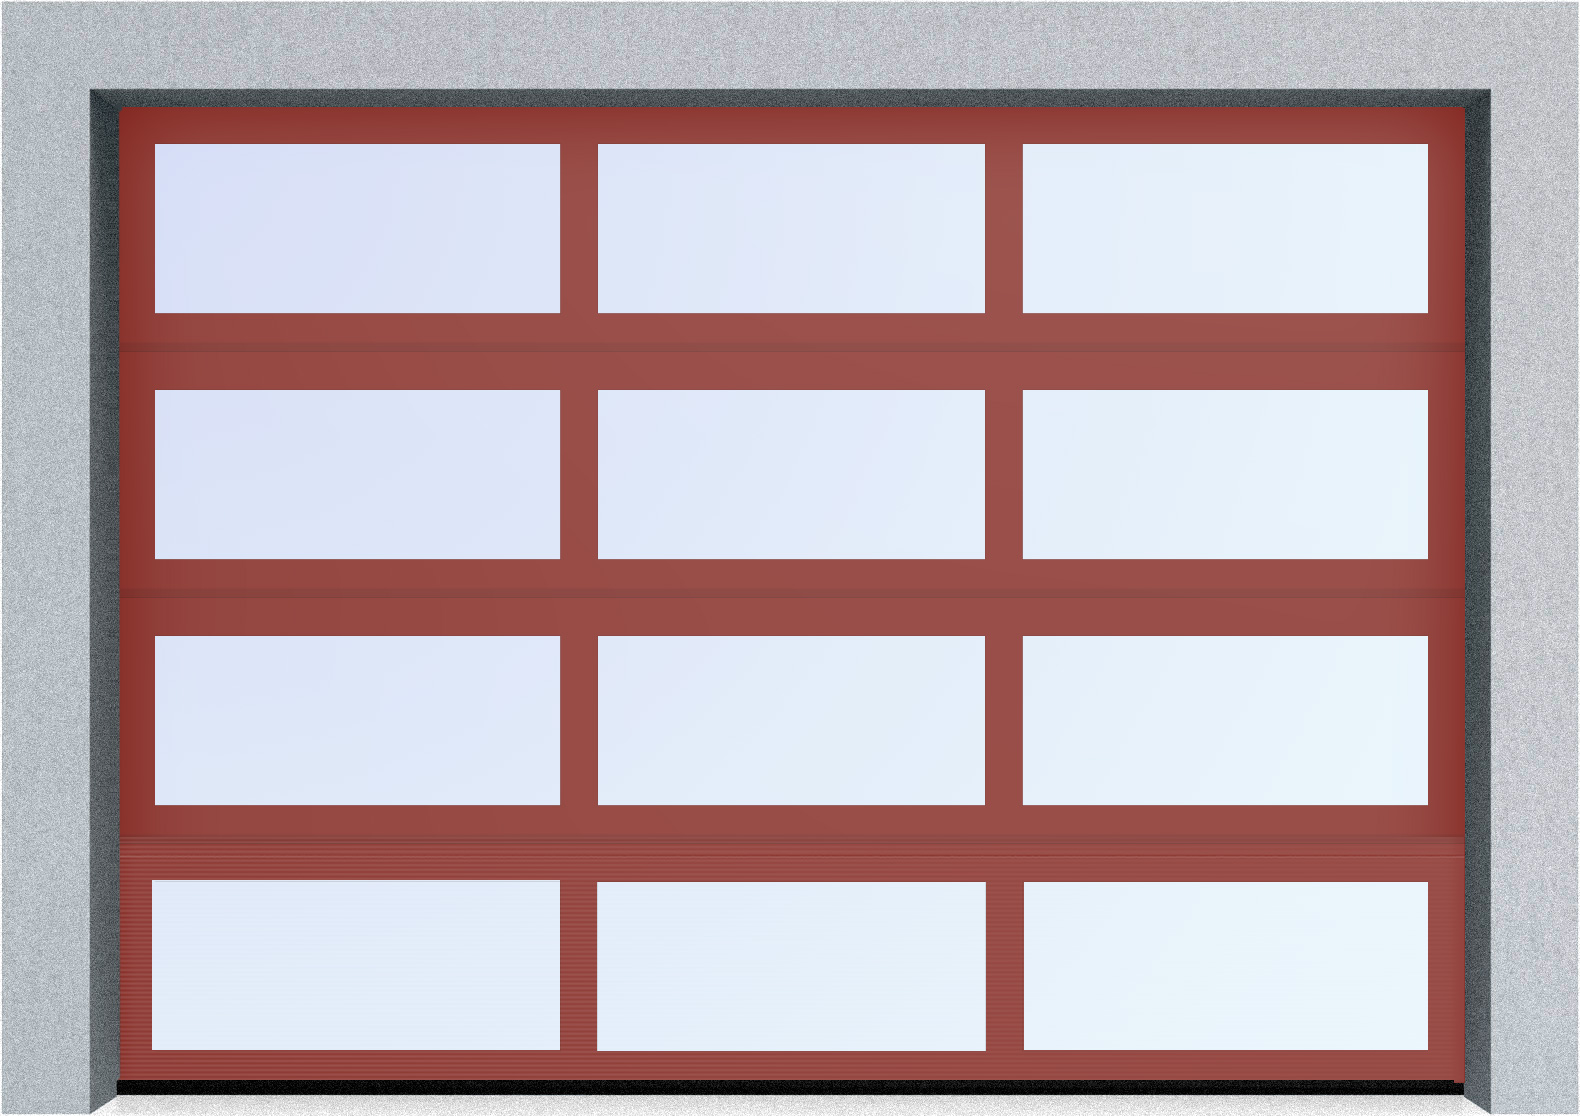  Секционные панорамные ворота серии AluTrend (АЛП) 2125х2250 нижняя панель стандартные цвета, фото 2 